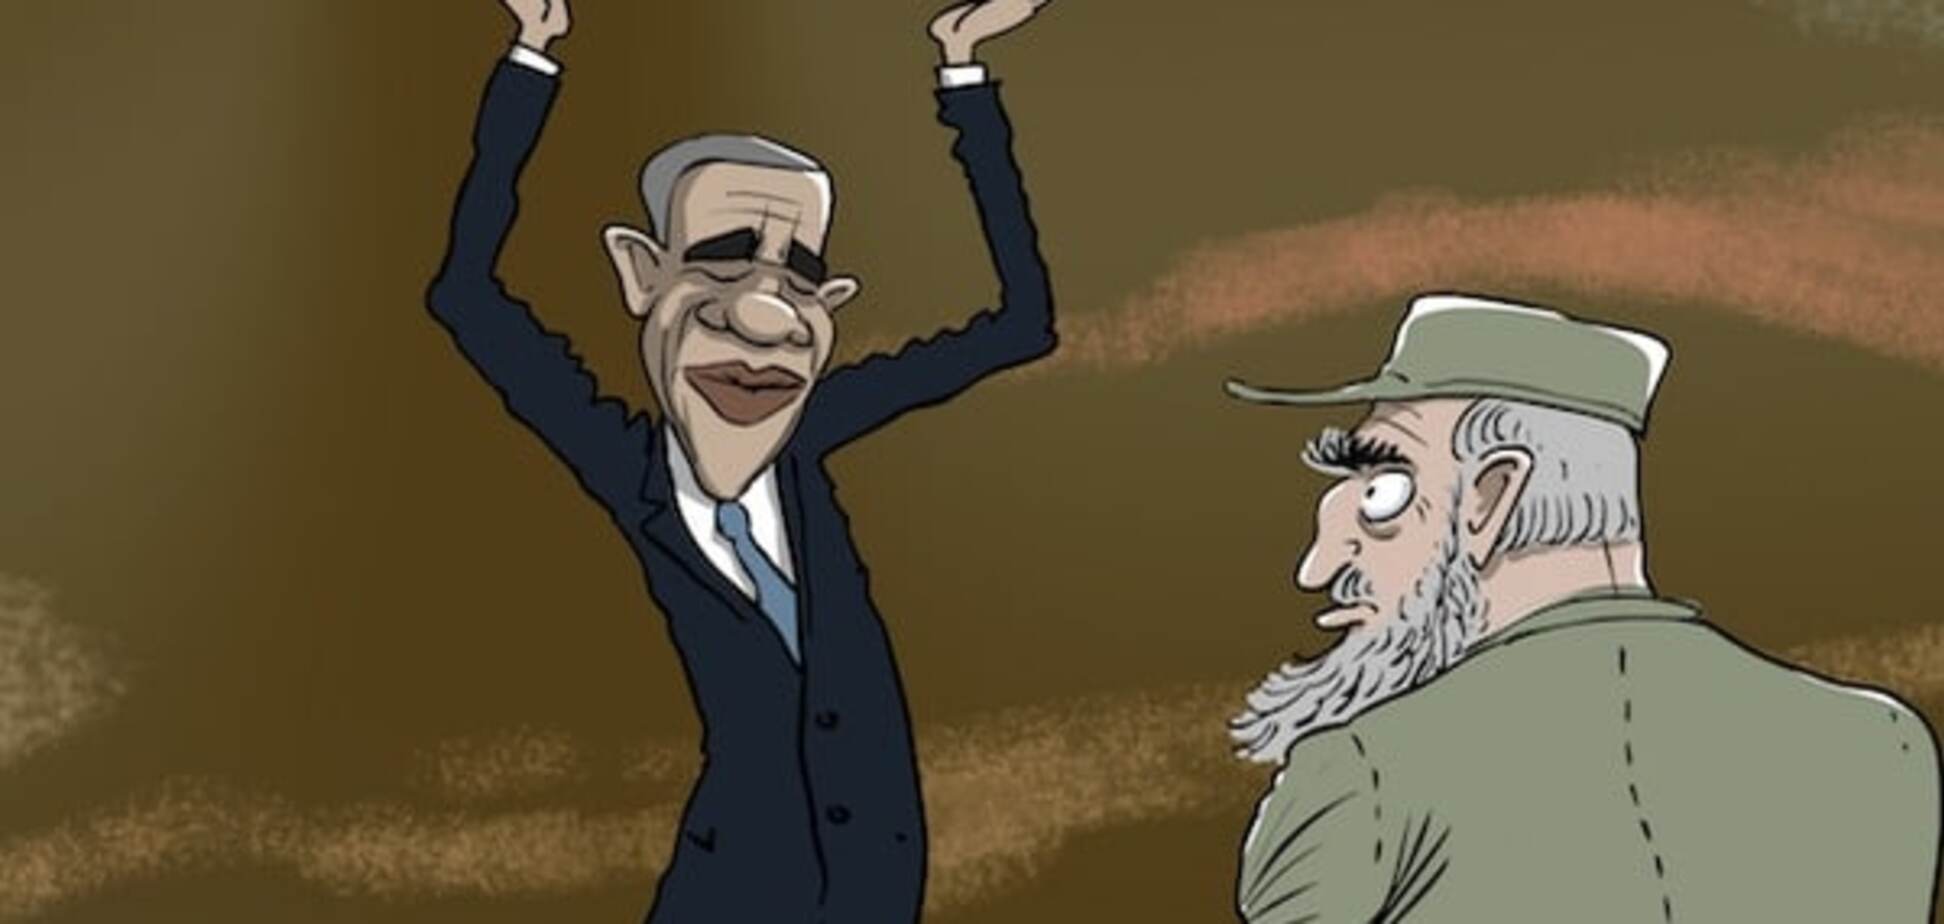 'Геополітичний кубізм': Йолкін намалював карикатуру про історичний візит Обами на Кубу